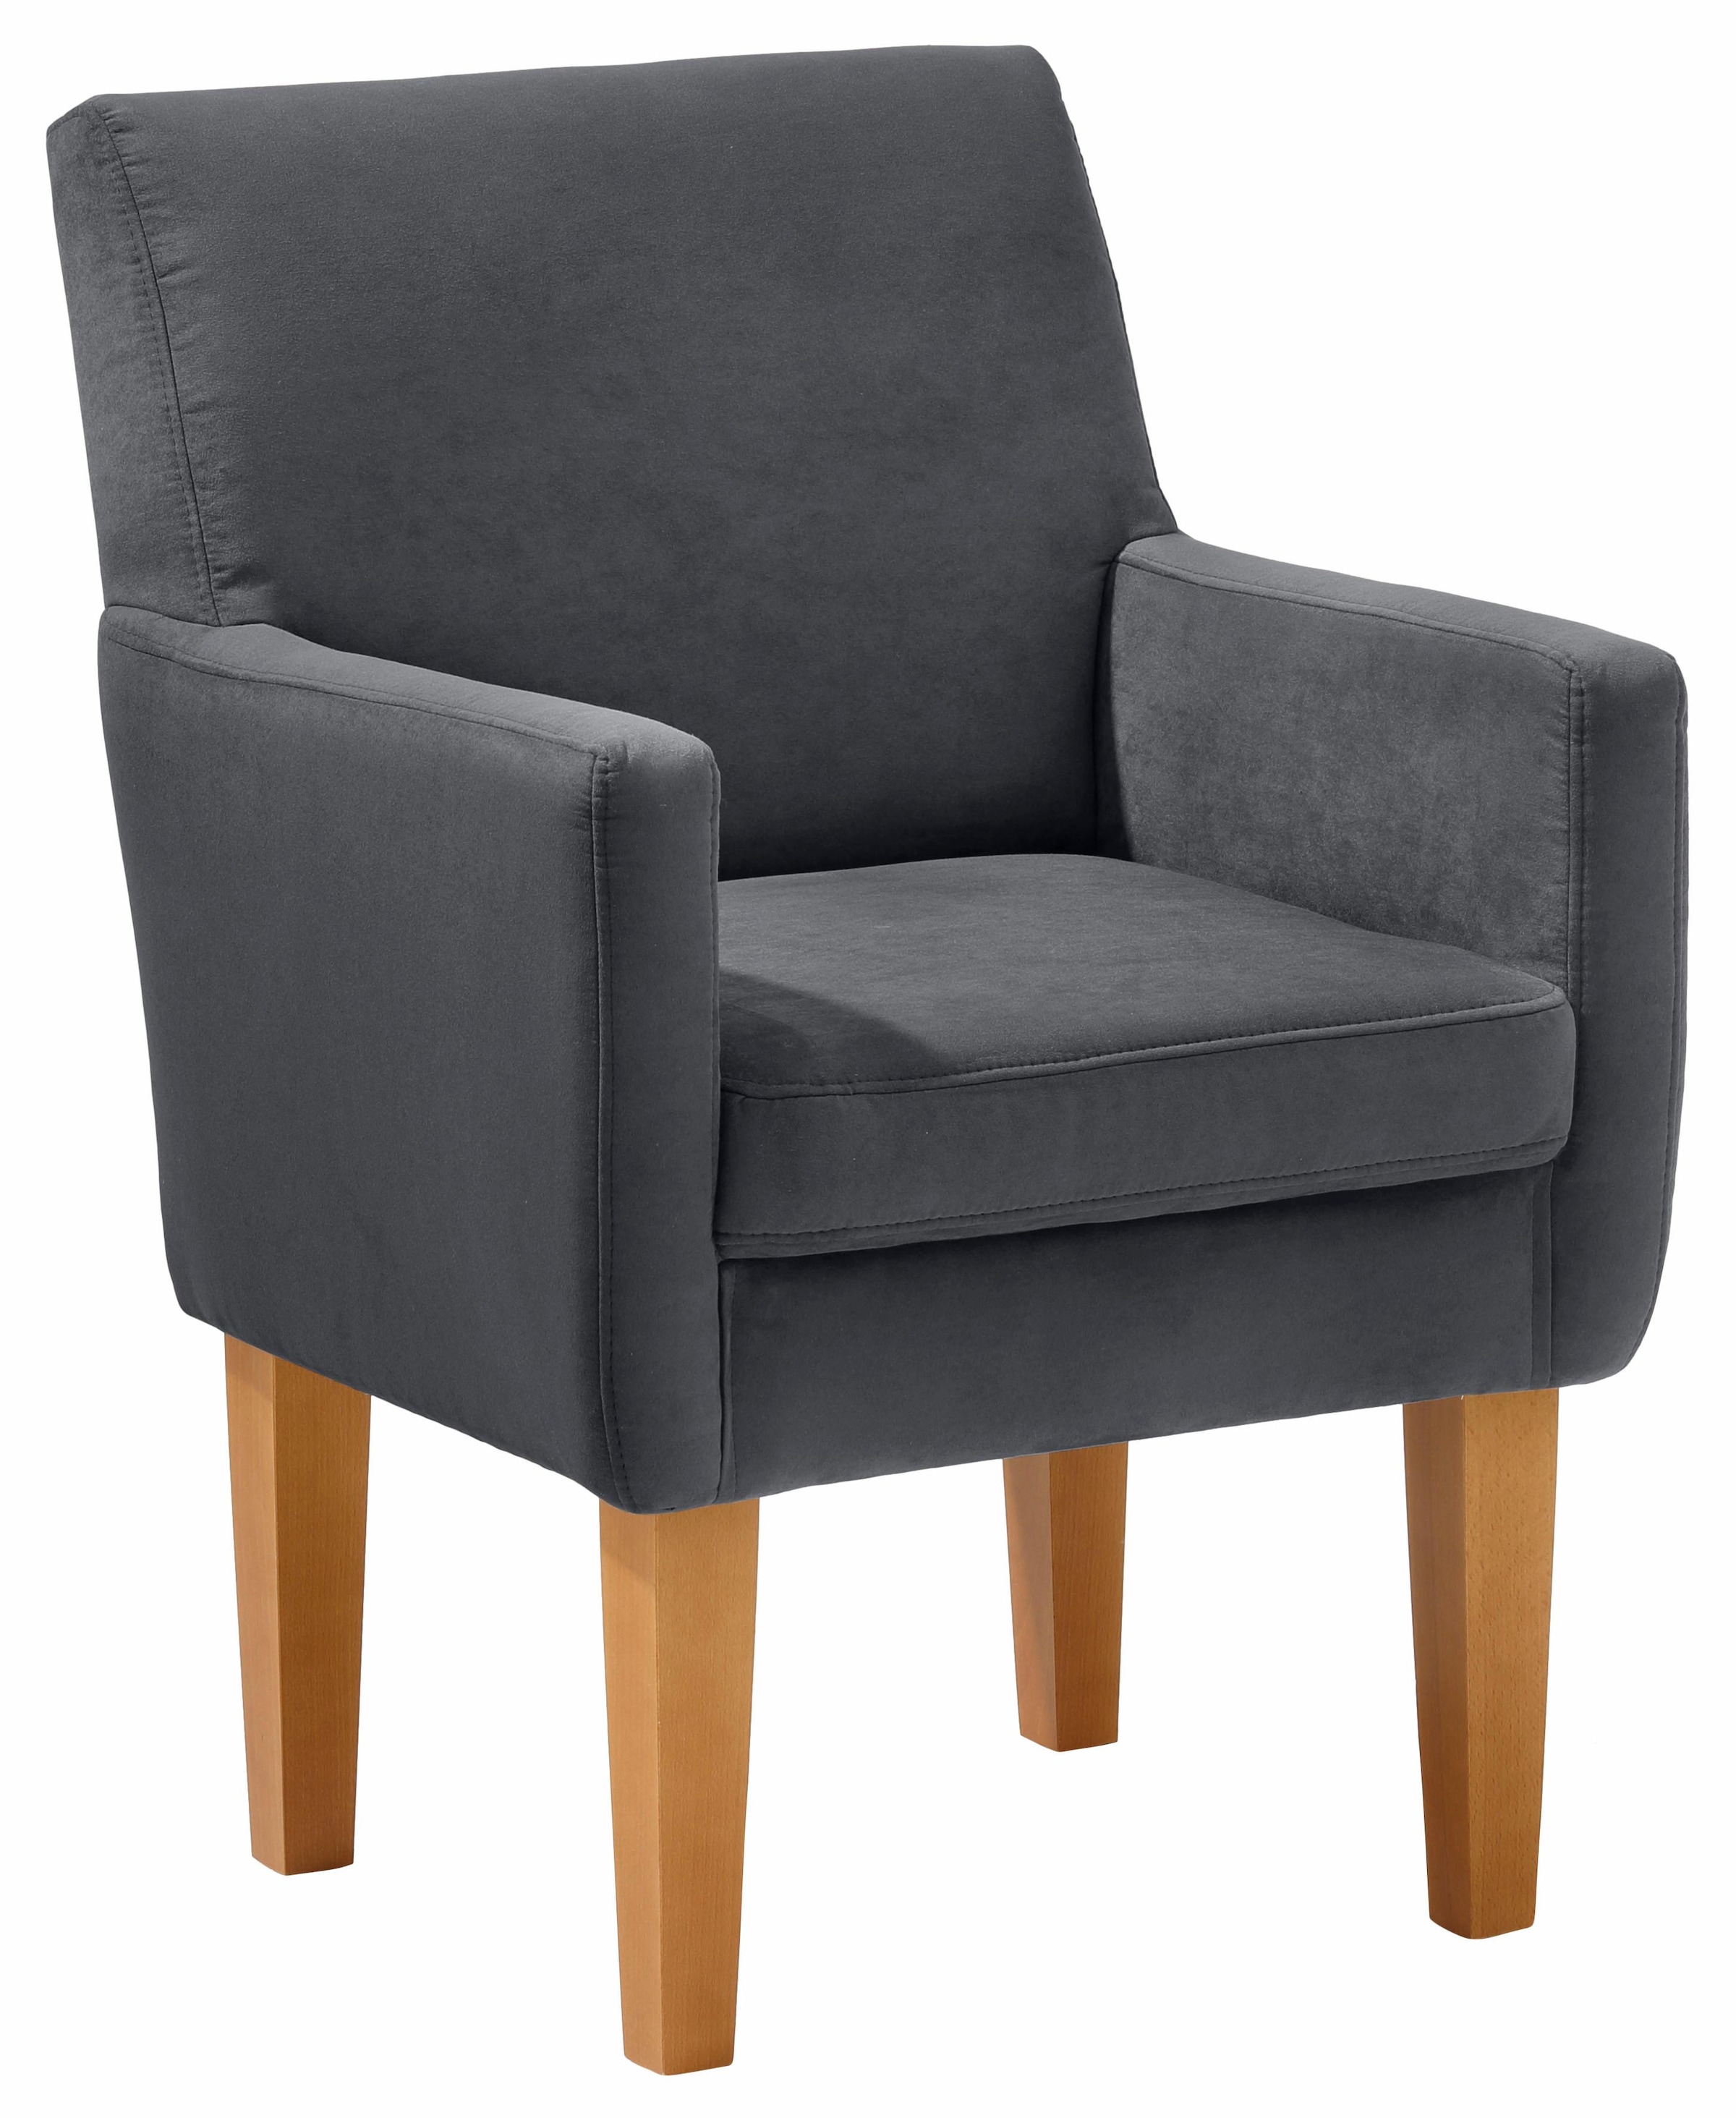 Sessel »Fehmarn«, komfortable Sitzhöhe von 54 cm, in 3 verschiedenen Bezugsqualitäten